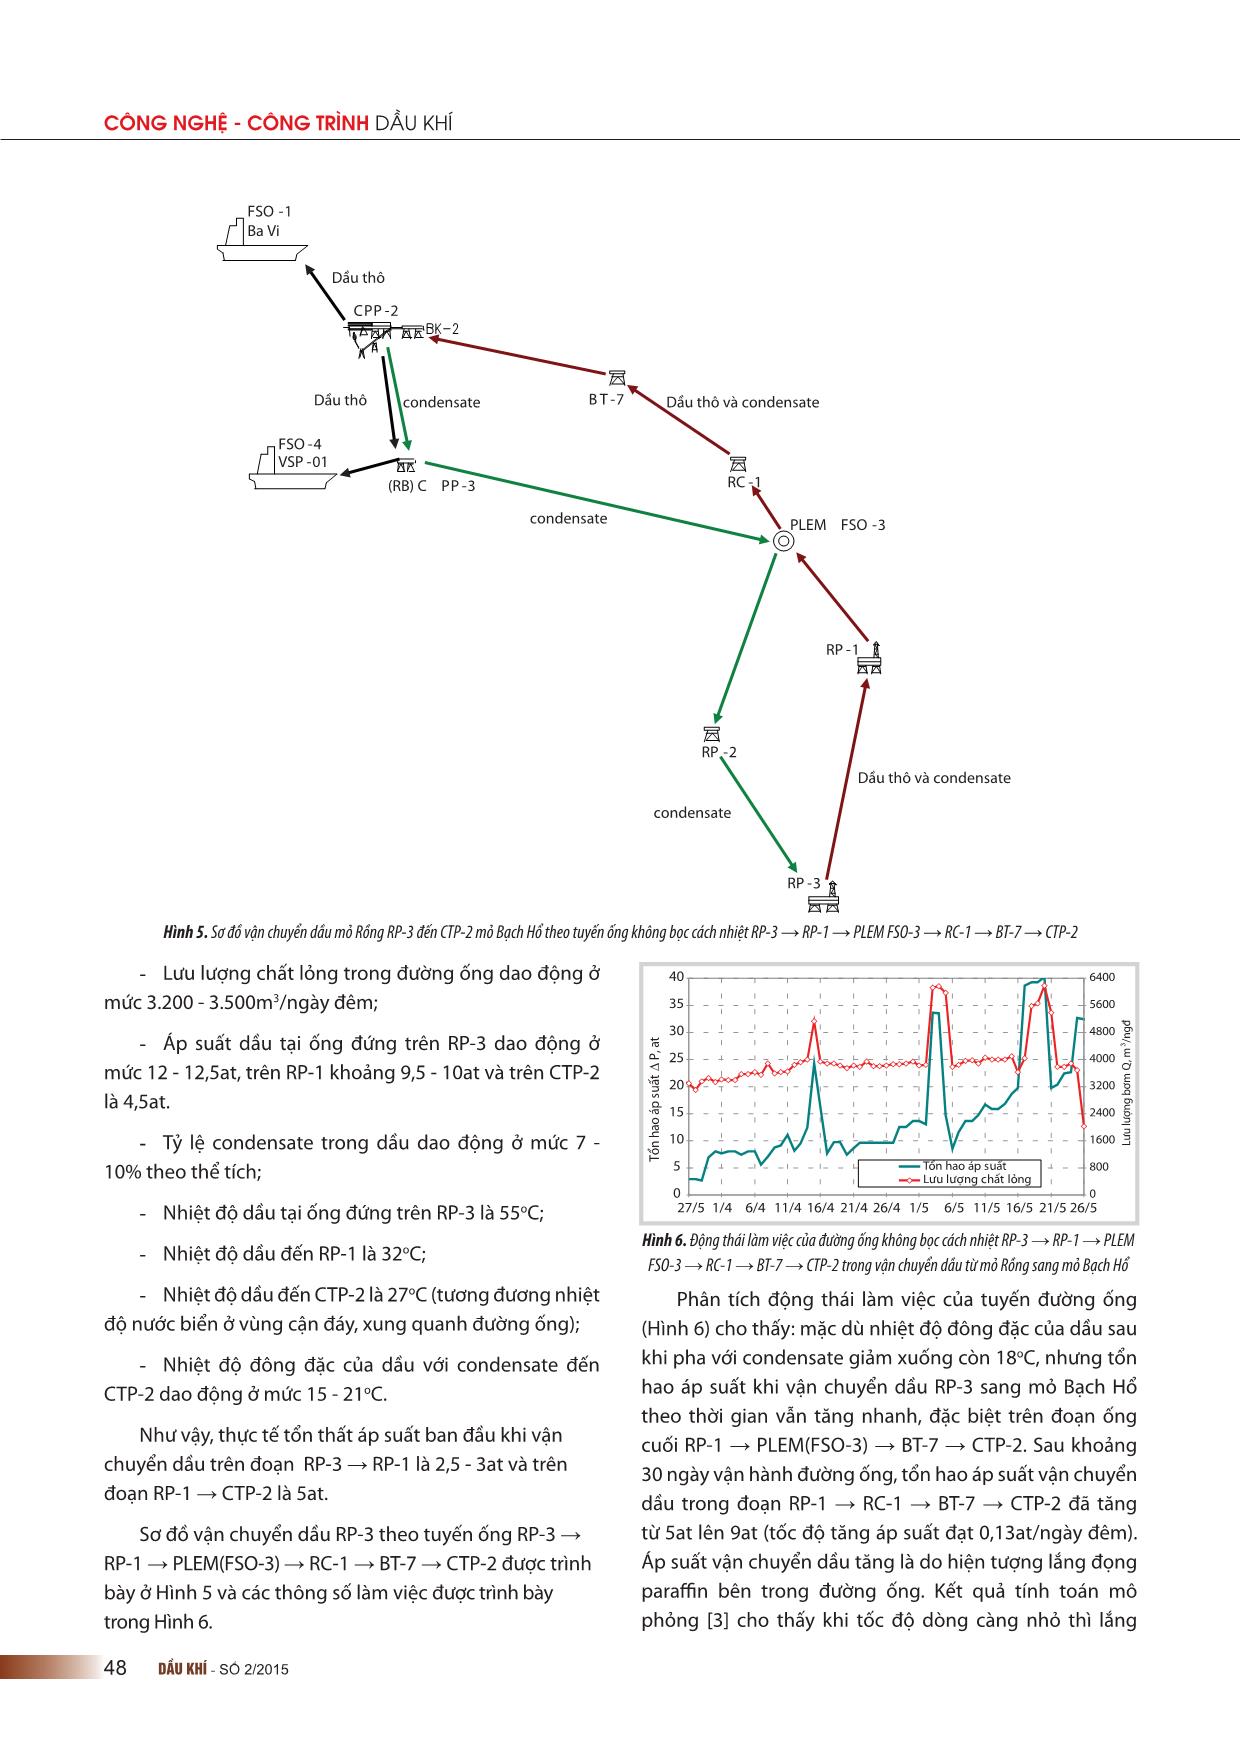 Kinh nghiệm vận chuyển dầu nhiều paraffin bằng đường ống ở các mỏ dầu khí ngoài khơi của liên doanh Việt-Nga “Vietsovpetro” trang 6